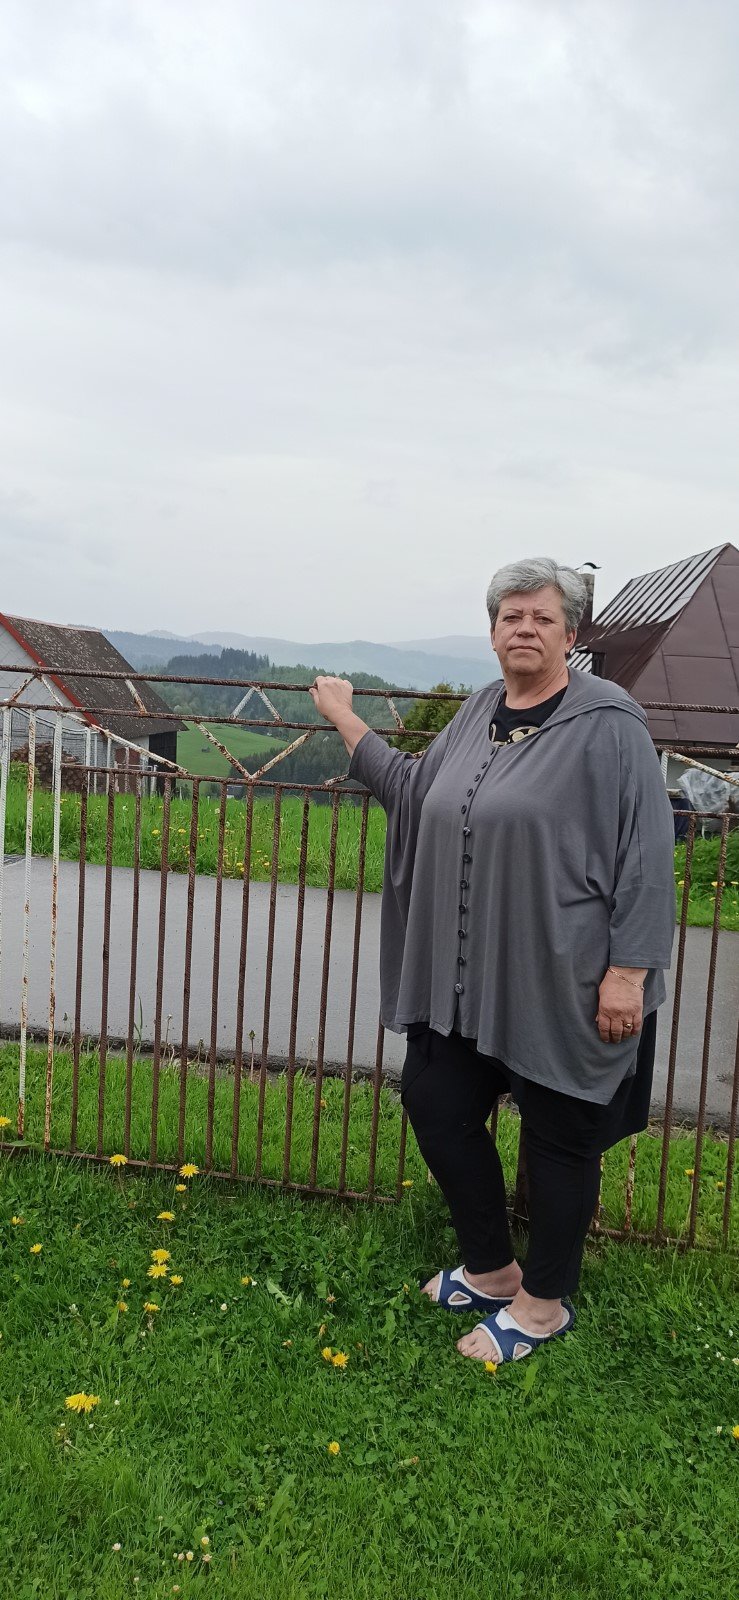 Renata Kopečná (56) se jako jedna z mála v obci nebojí k případu vyjádřit. Nad chováním zastupitle a podnikatele kroutí hlavou.